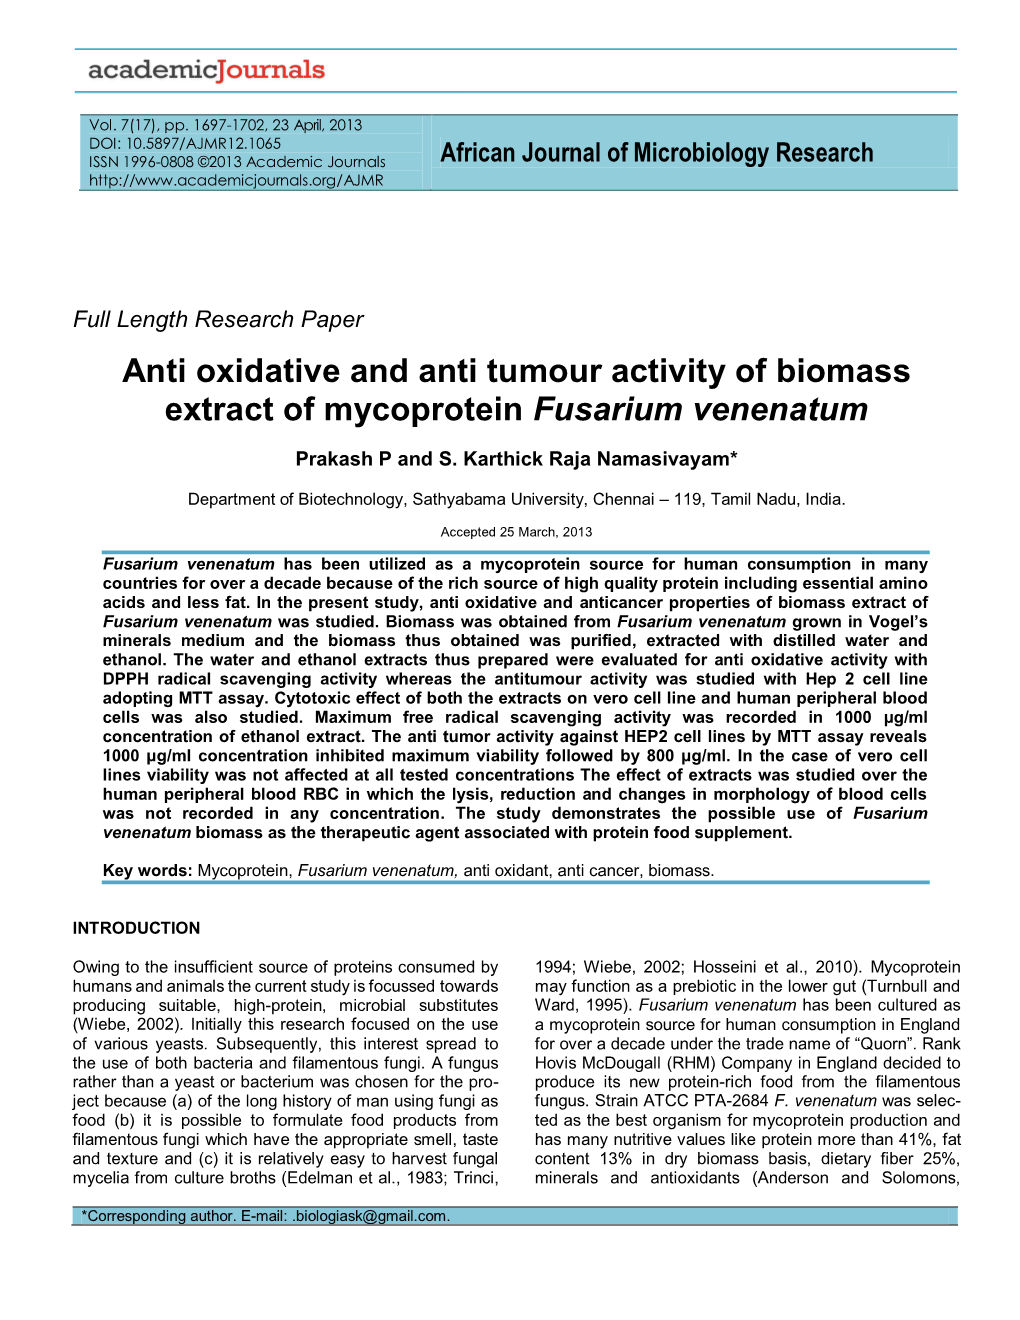 Anti Oxidative and Anti Tumour Activity of Biomass Extract of Mycoprotein Fusarium Venenatum